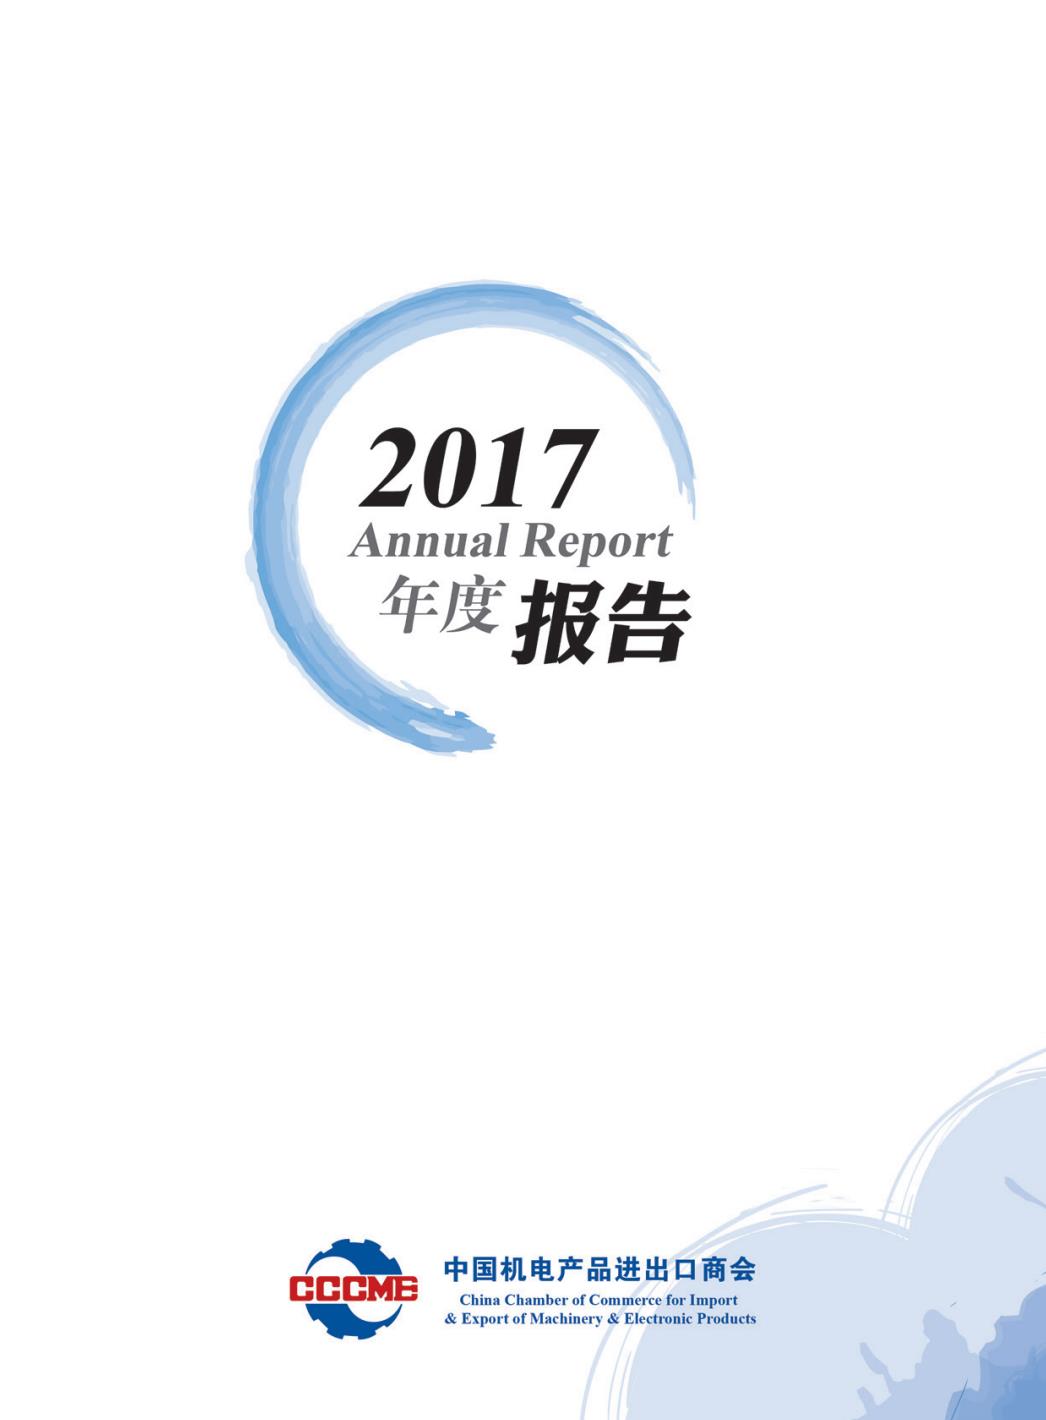 机电商会2017年度报告-中文版